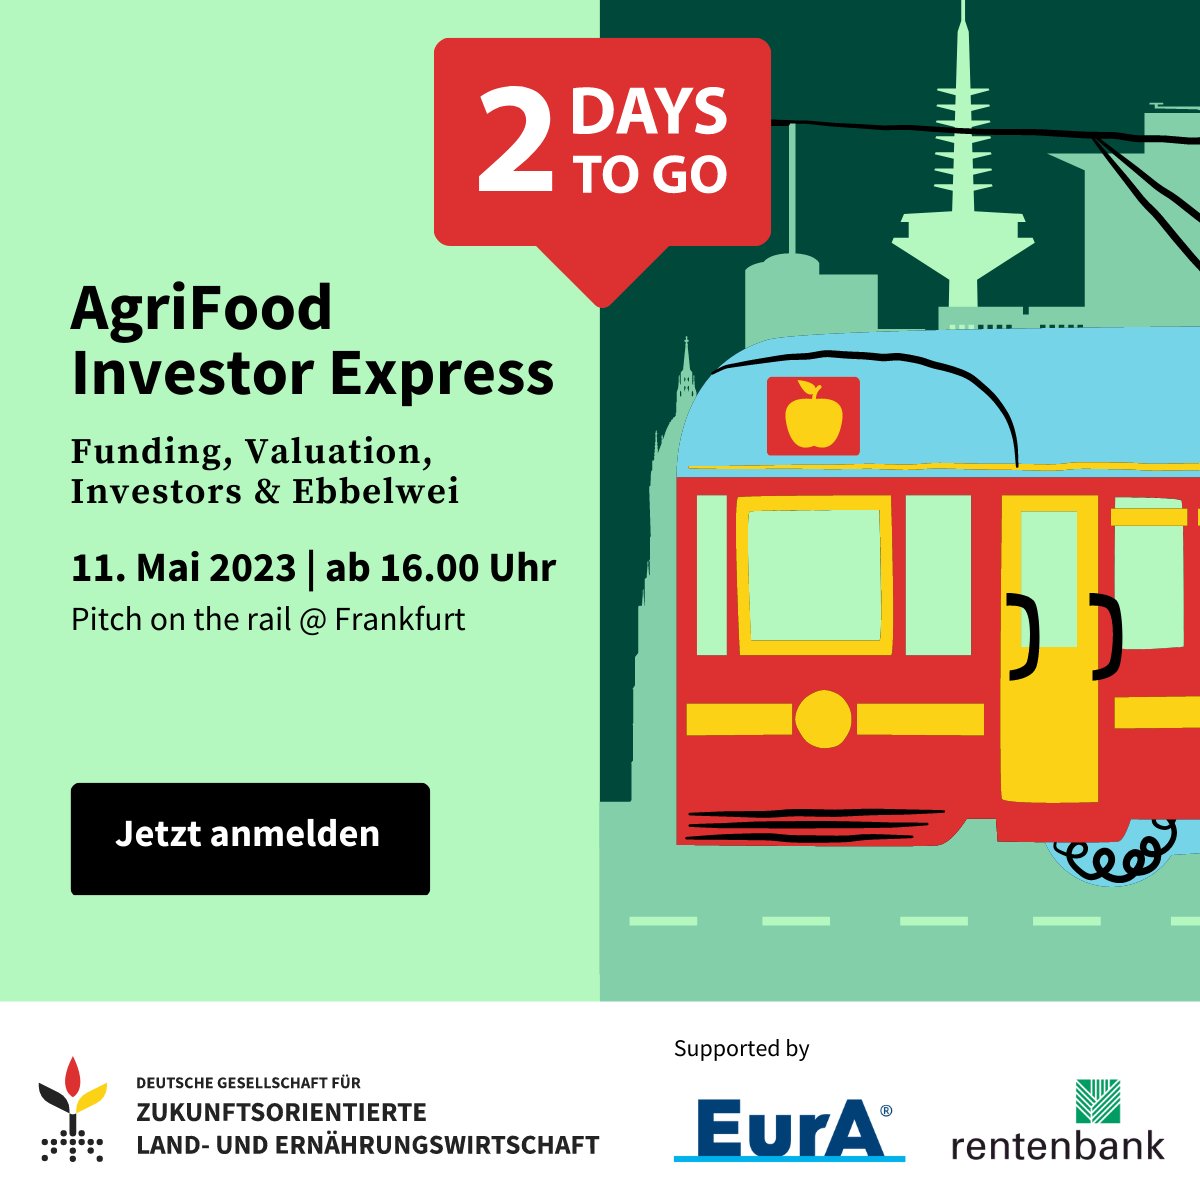 🔔Last Call! Jetzt Ticket sichern für Investor Express Event am 11. Mai in Frankfurt! Mit dabei sind auch @gruenderszene, @rentenbank und @OF_Organifarms. 🎟️Hier anmelden: agri-food.de/11-mai-agrifoo… #agrifood #startup #Funding #Investment